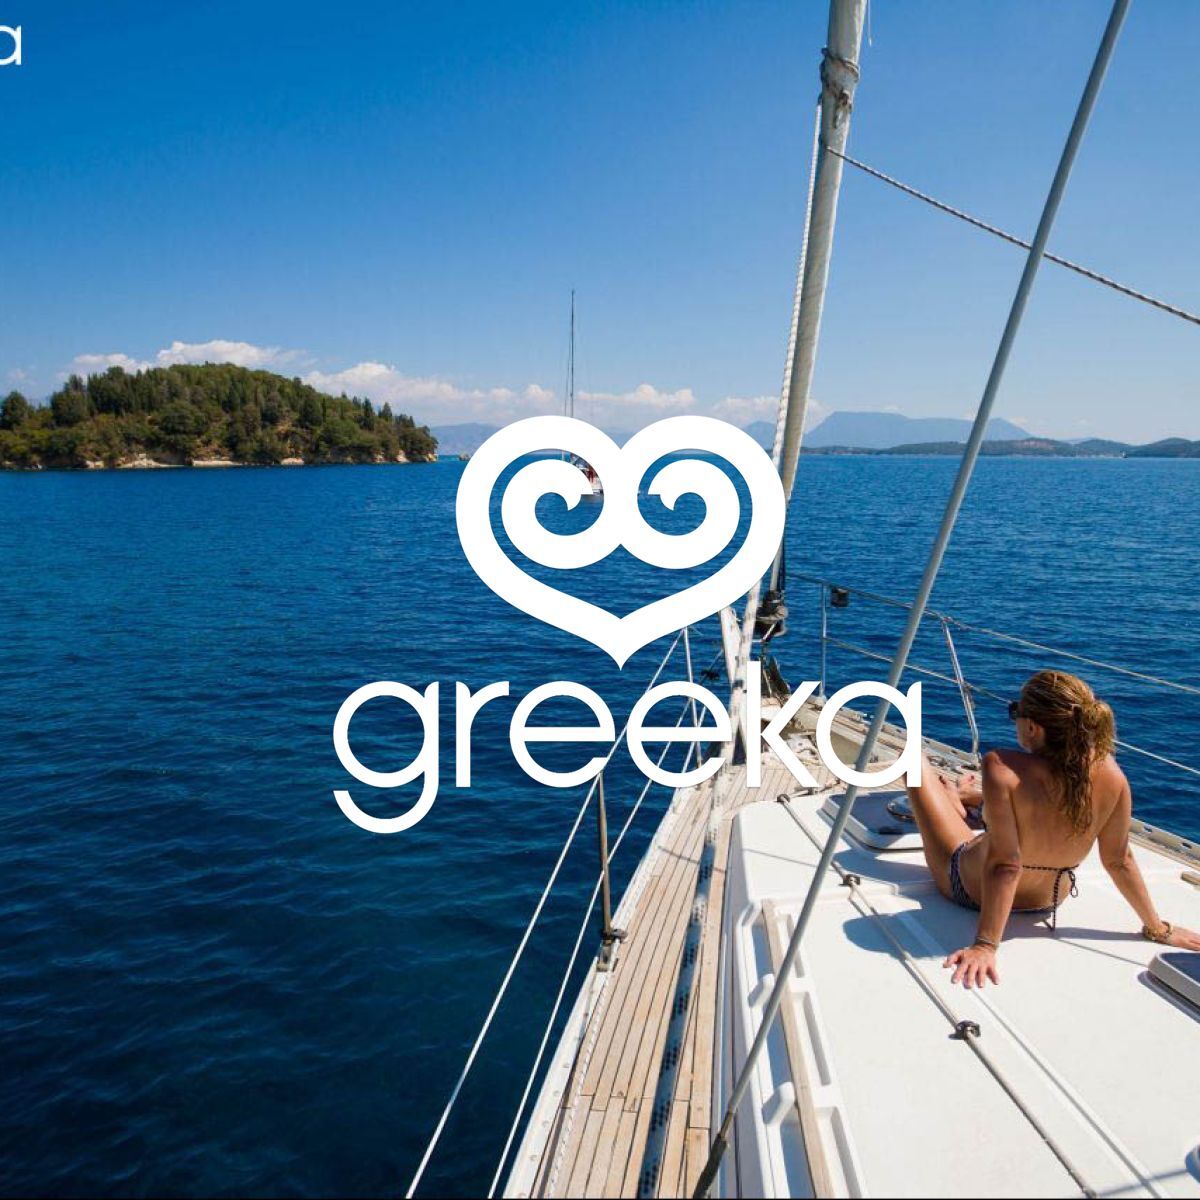 cheap yacht charter greece